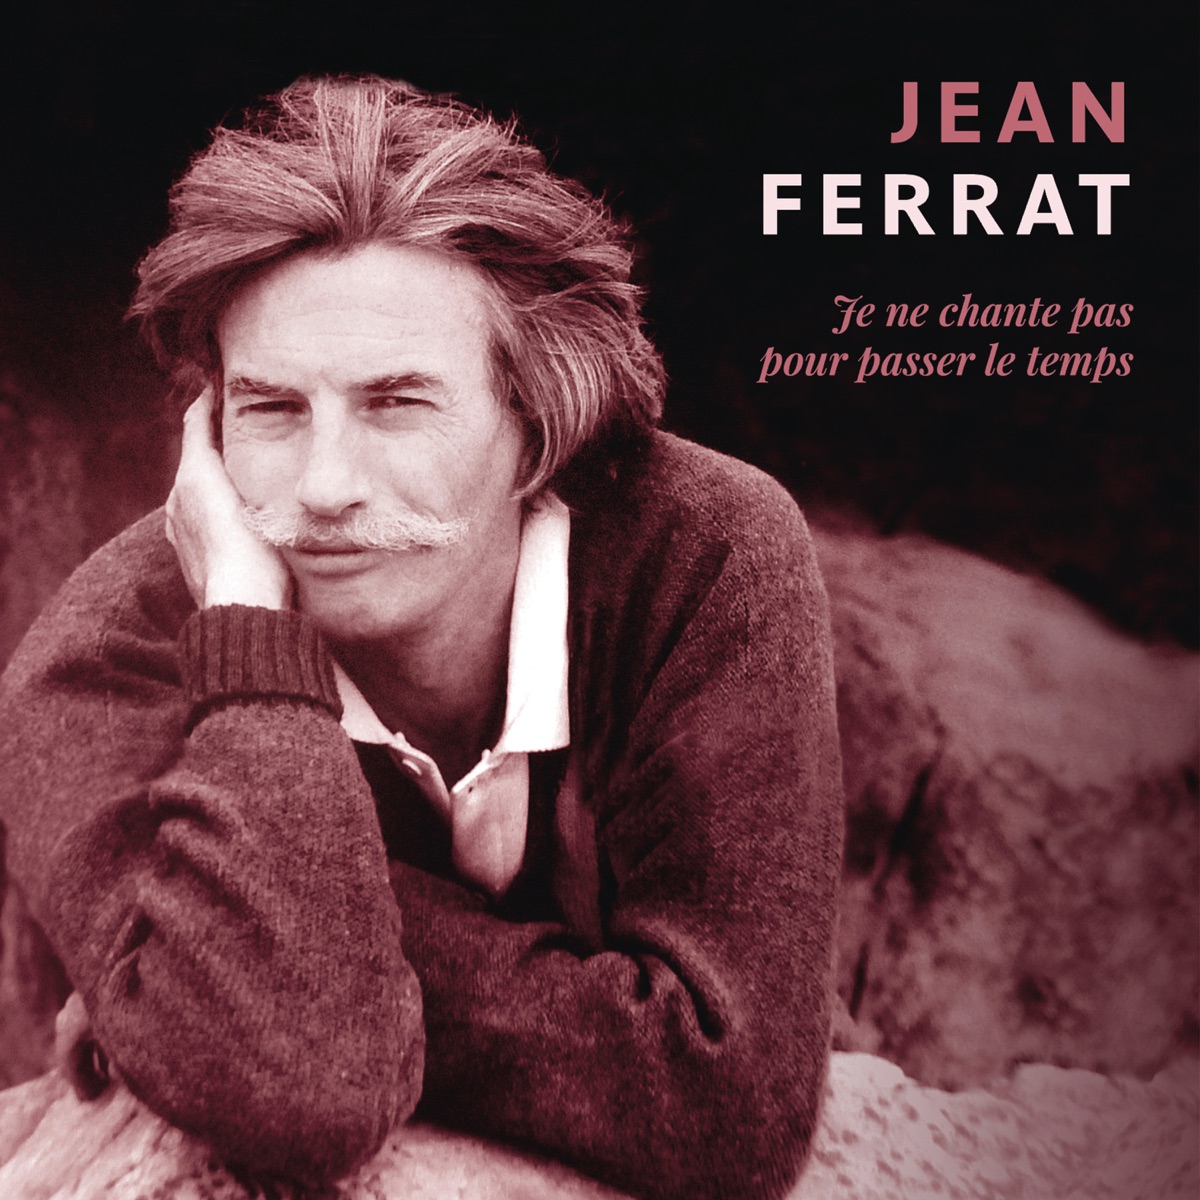 Ferrat chante Aragon: L'intégrale par Jean Ferrat sur Apple Music